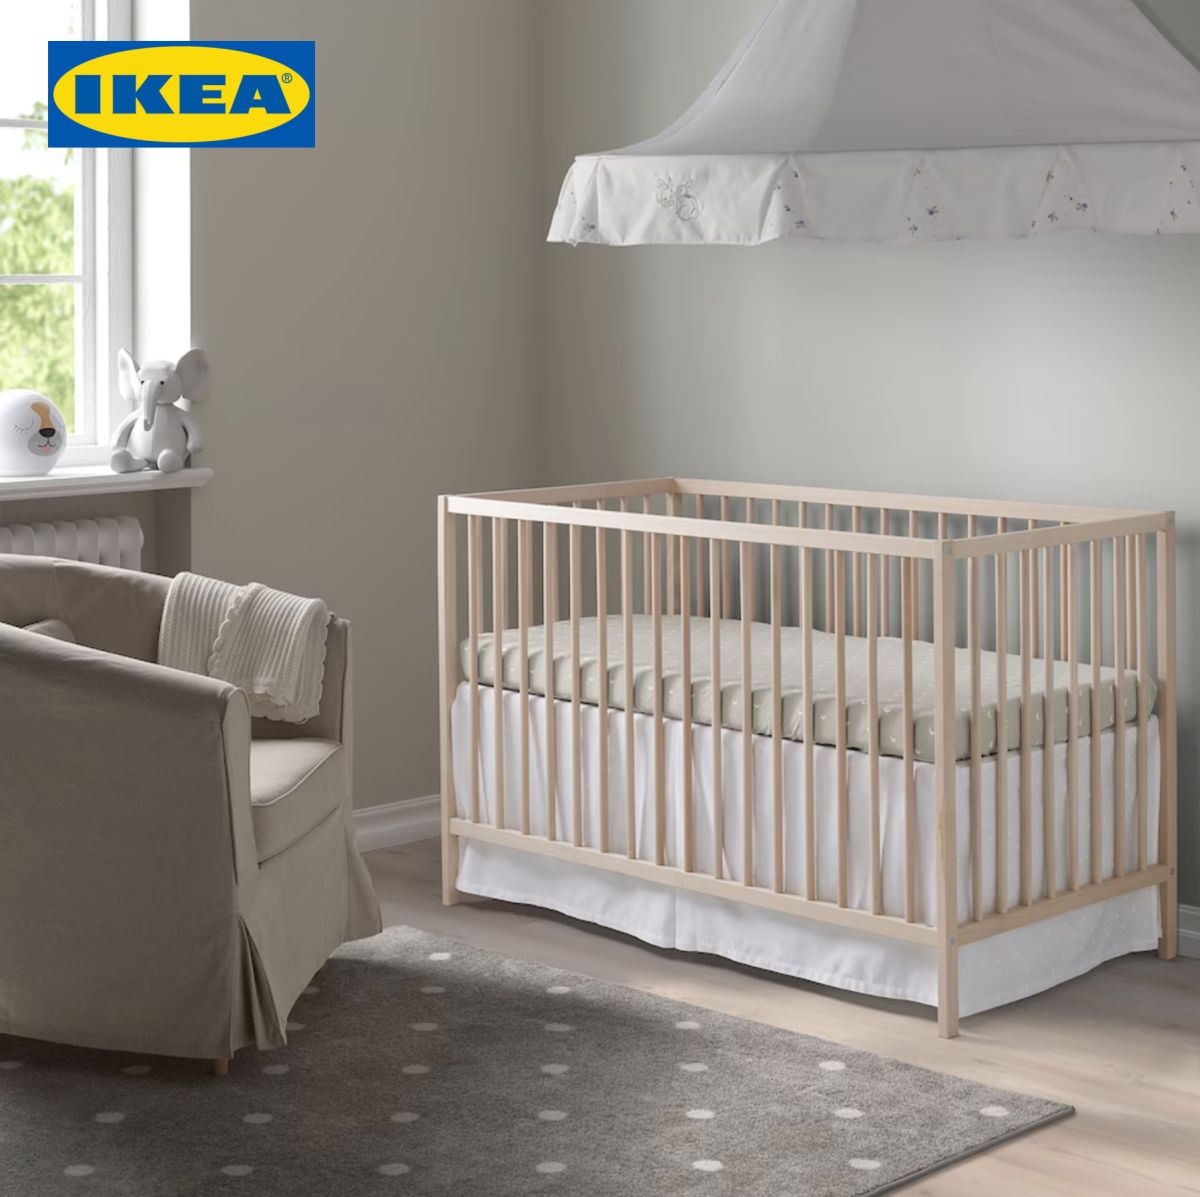 IKEA Baby Furniture